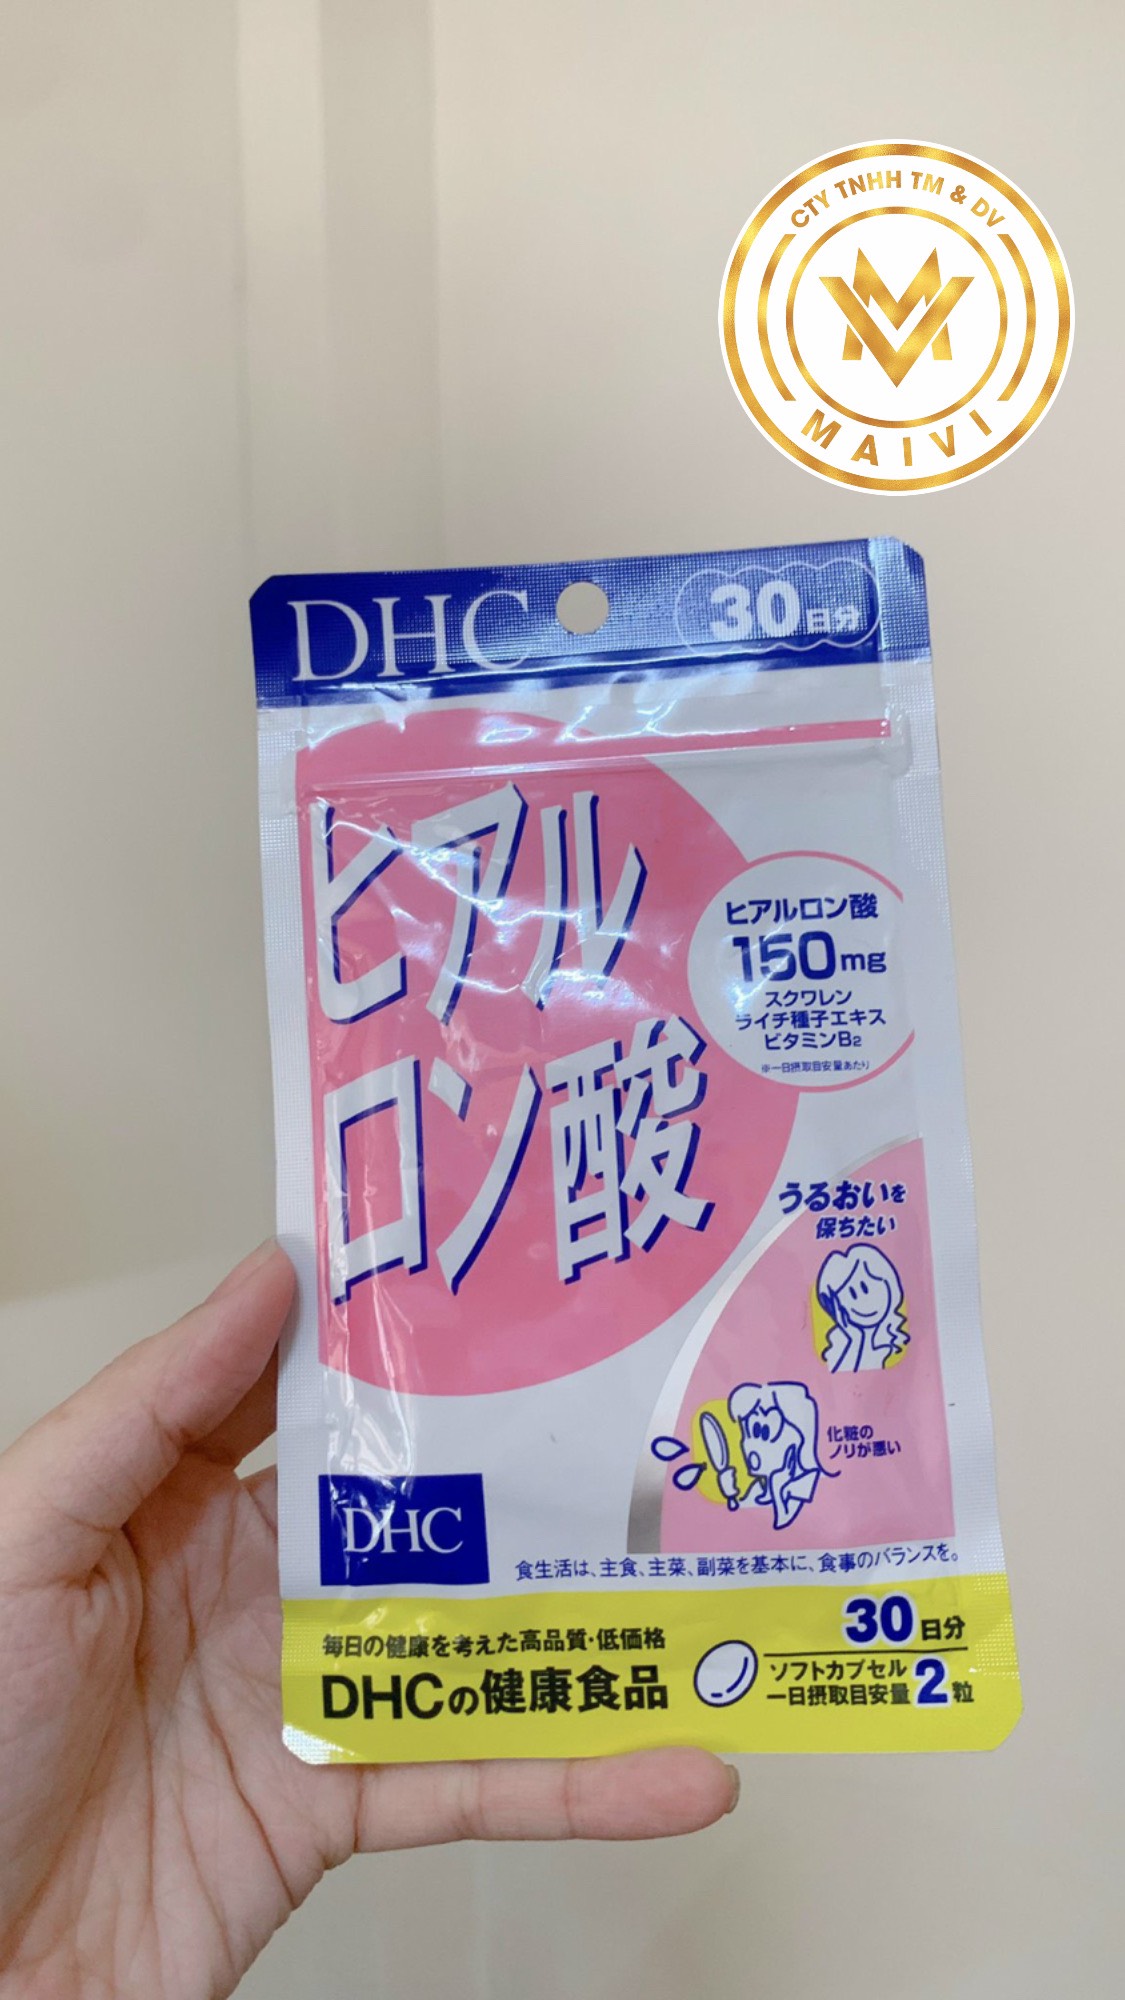 Thực phẩm bảo vệ sức khỏe DHC Hyaluronic Acid 30 days ( hàng chính hãng, có tem phụ )